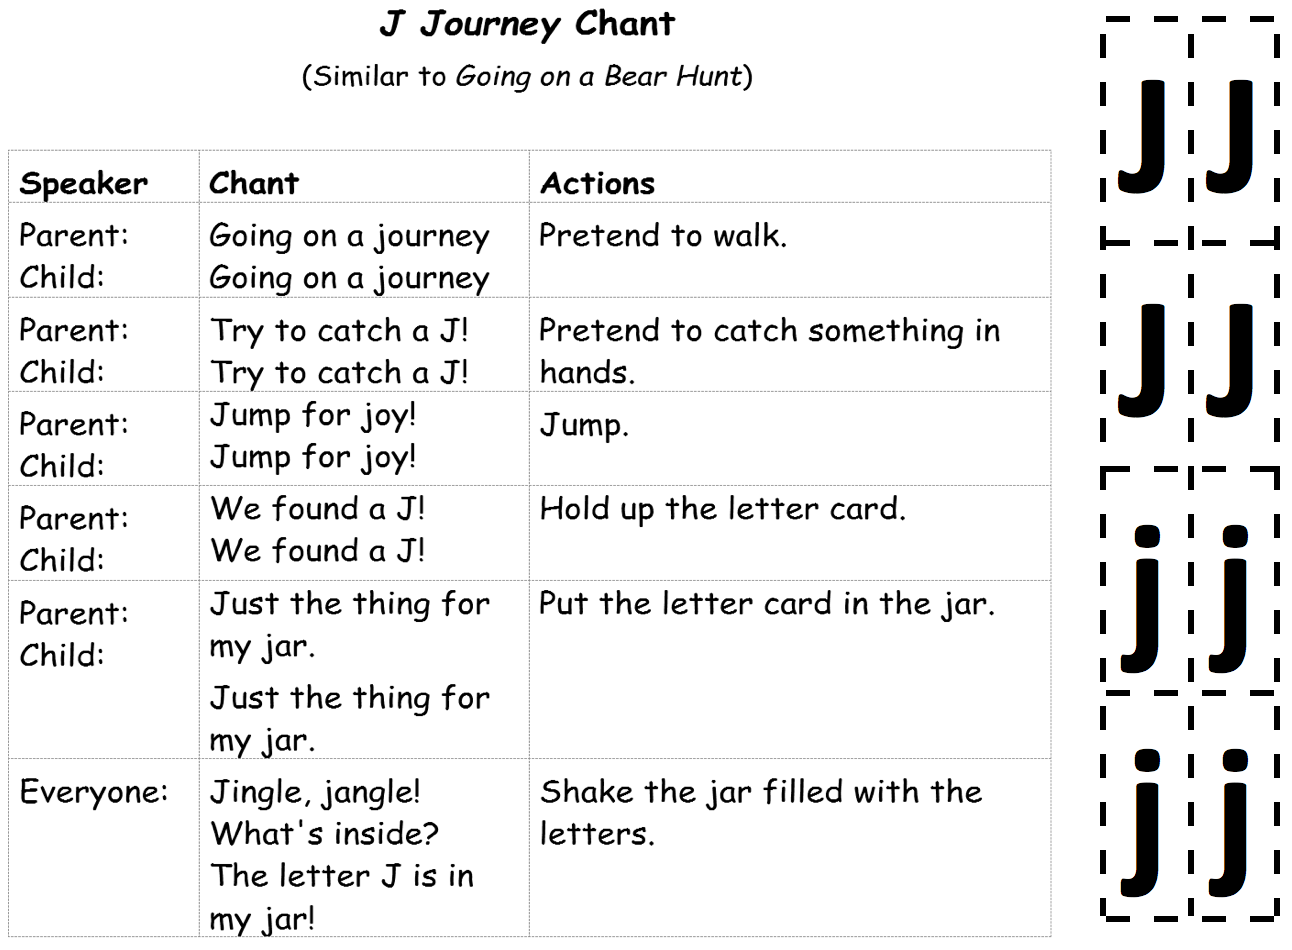 J-Journey-Chant